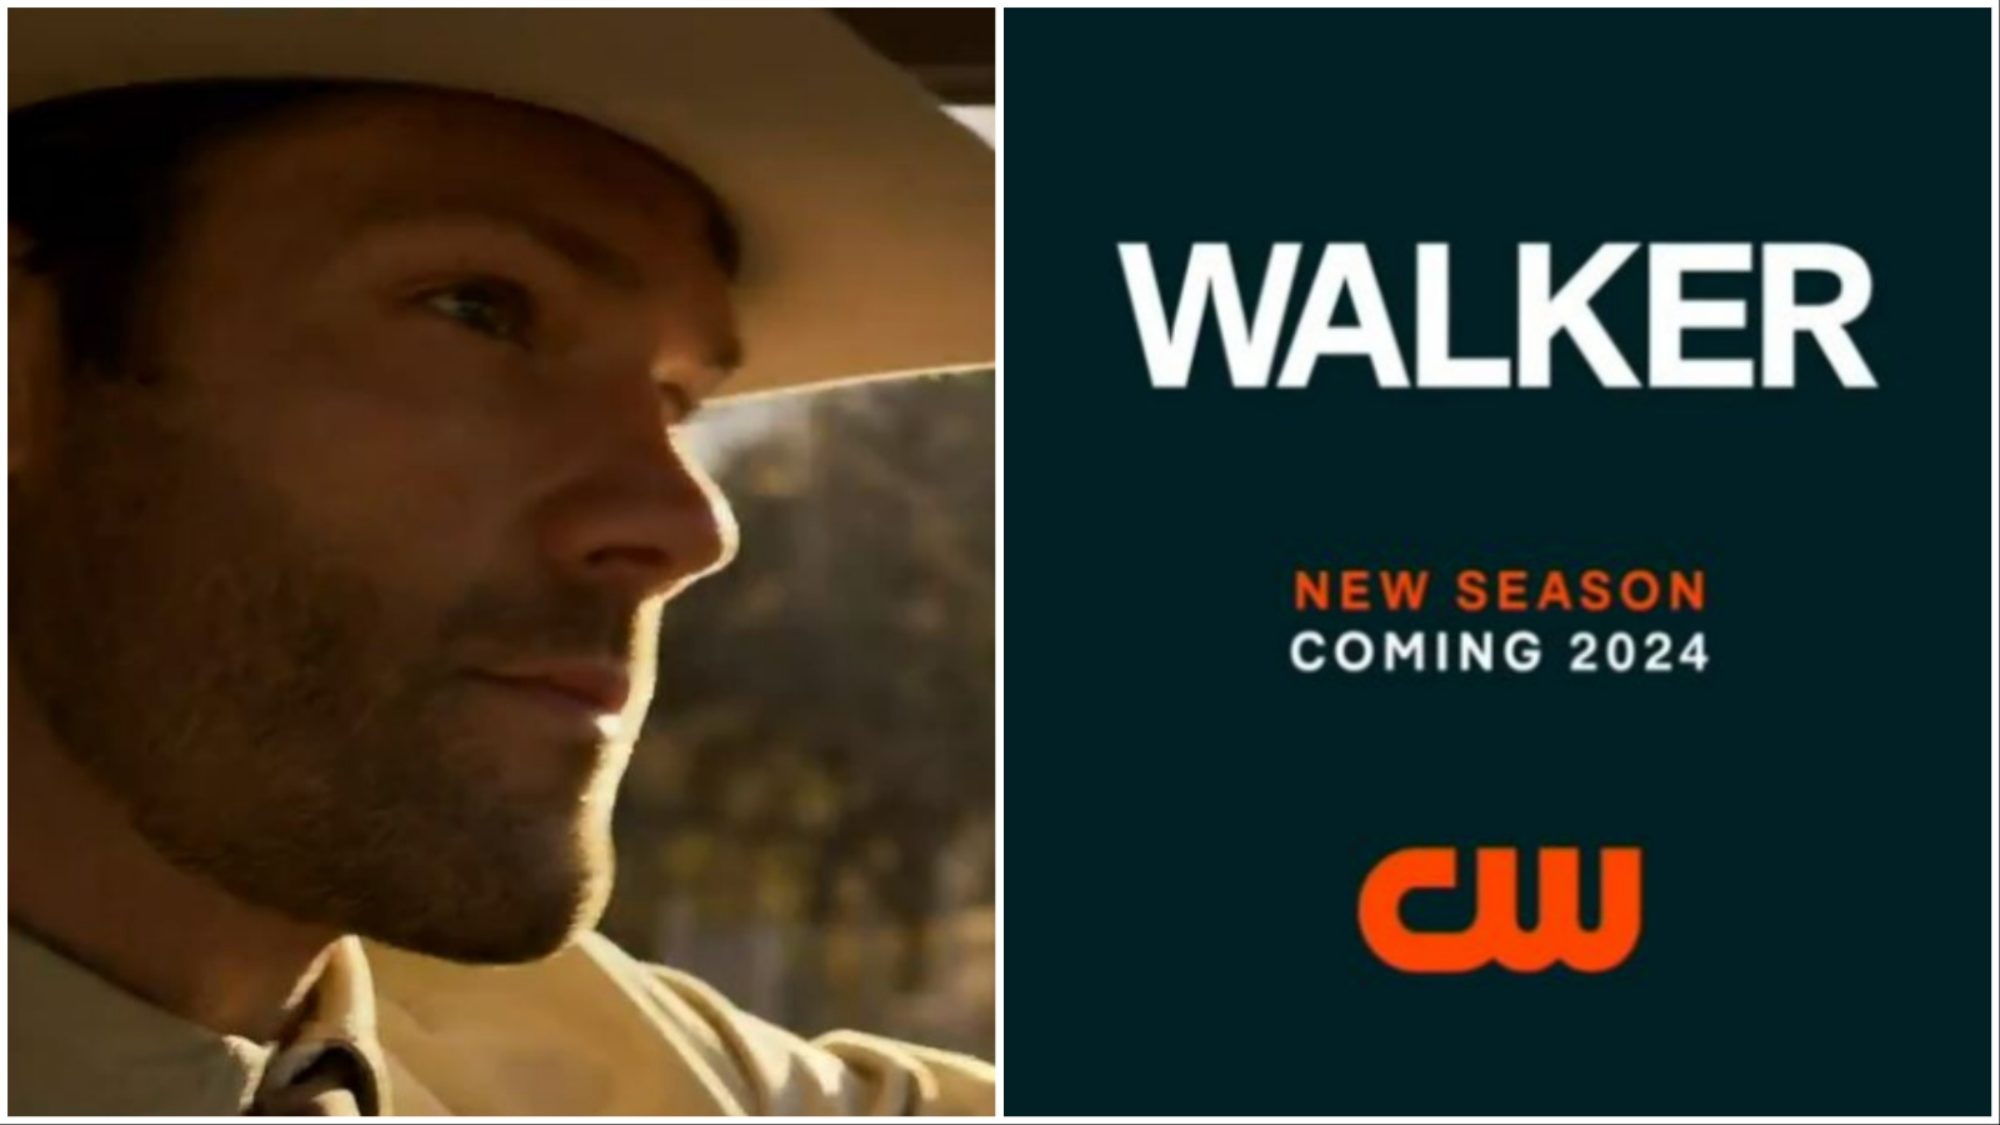 Walker Season 4 Jared Padalecki Series Gets CW 2024 MiniTeaser